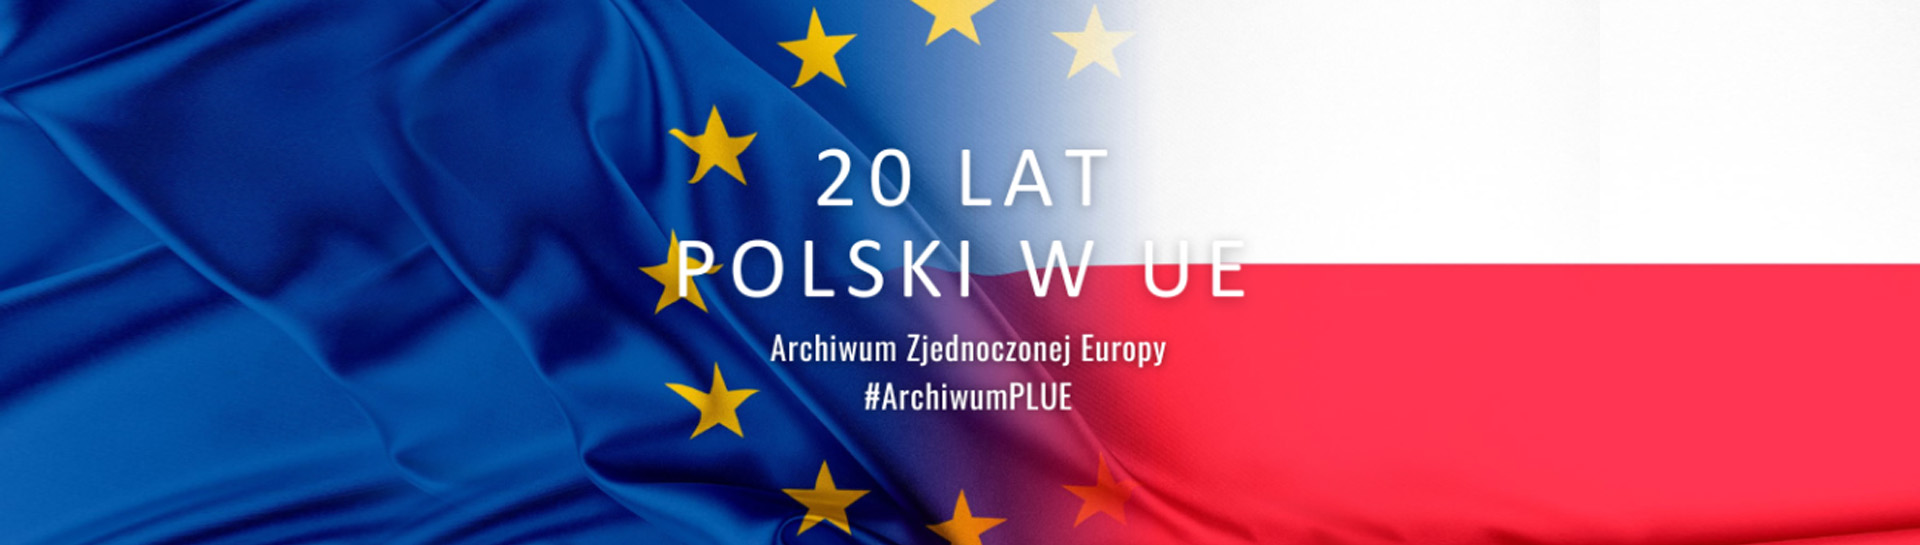 20 lat Polski w UE – #ArchiwumPLUE